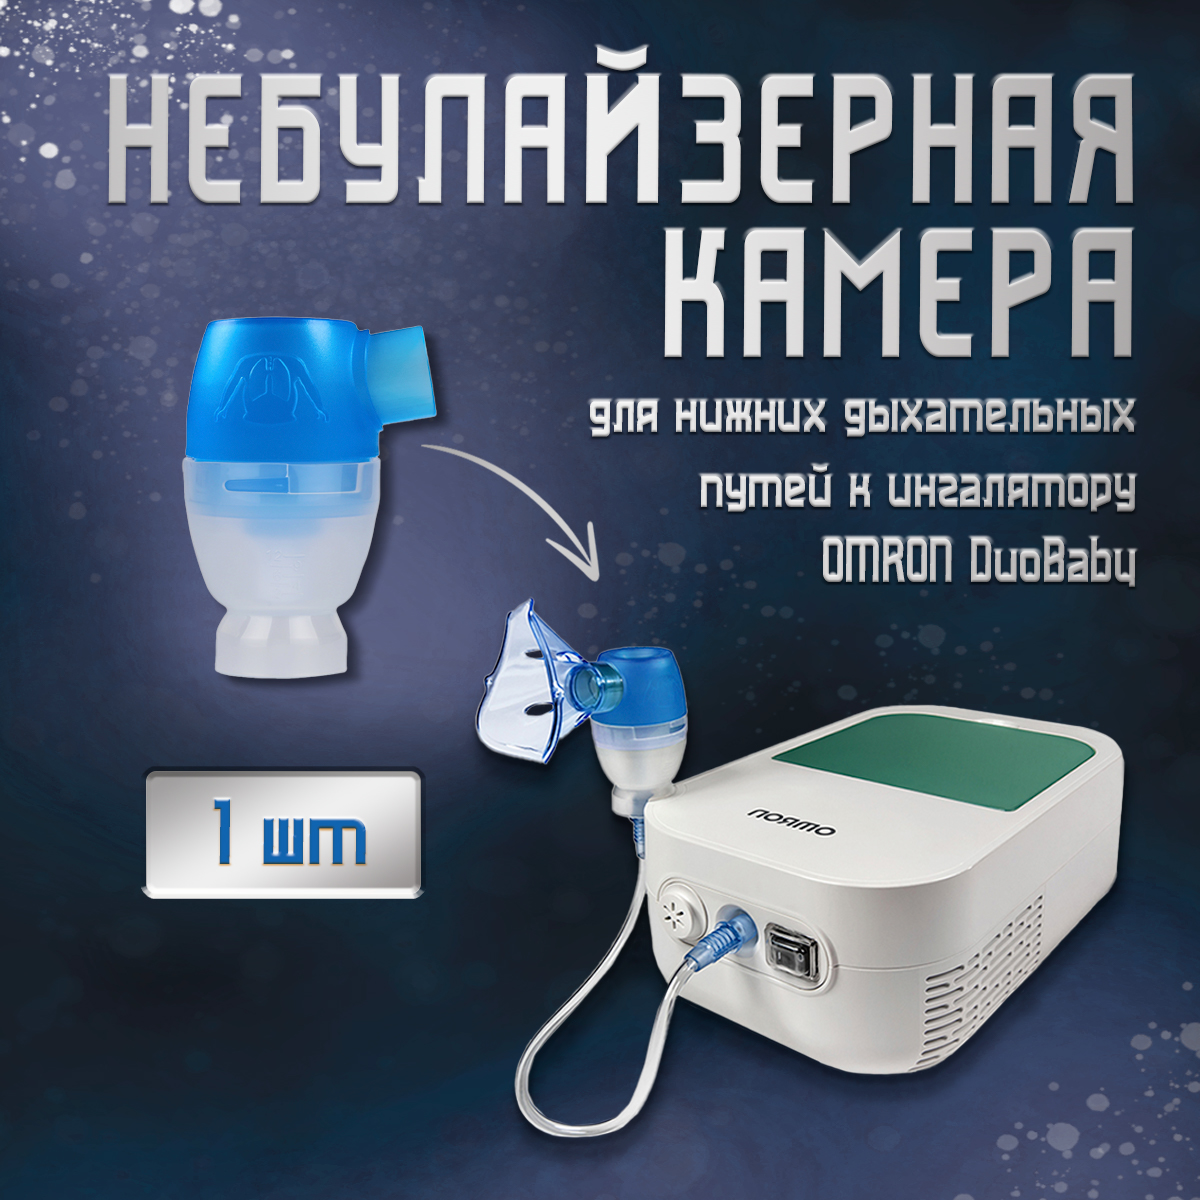 Небулайзерная камера для нижних дыхательных путей OMRON DuoBaby NE-С301-RU